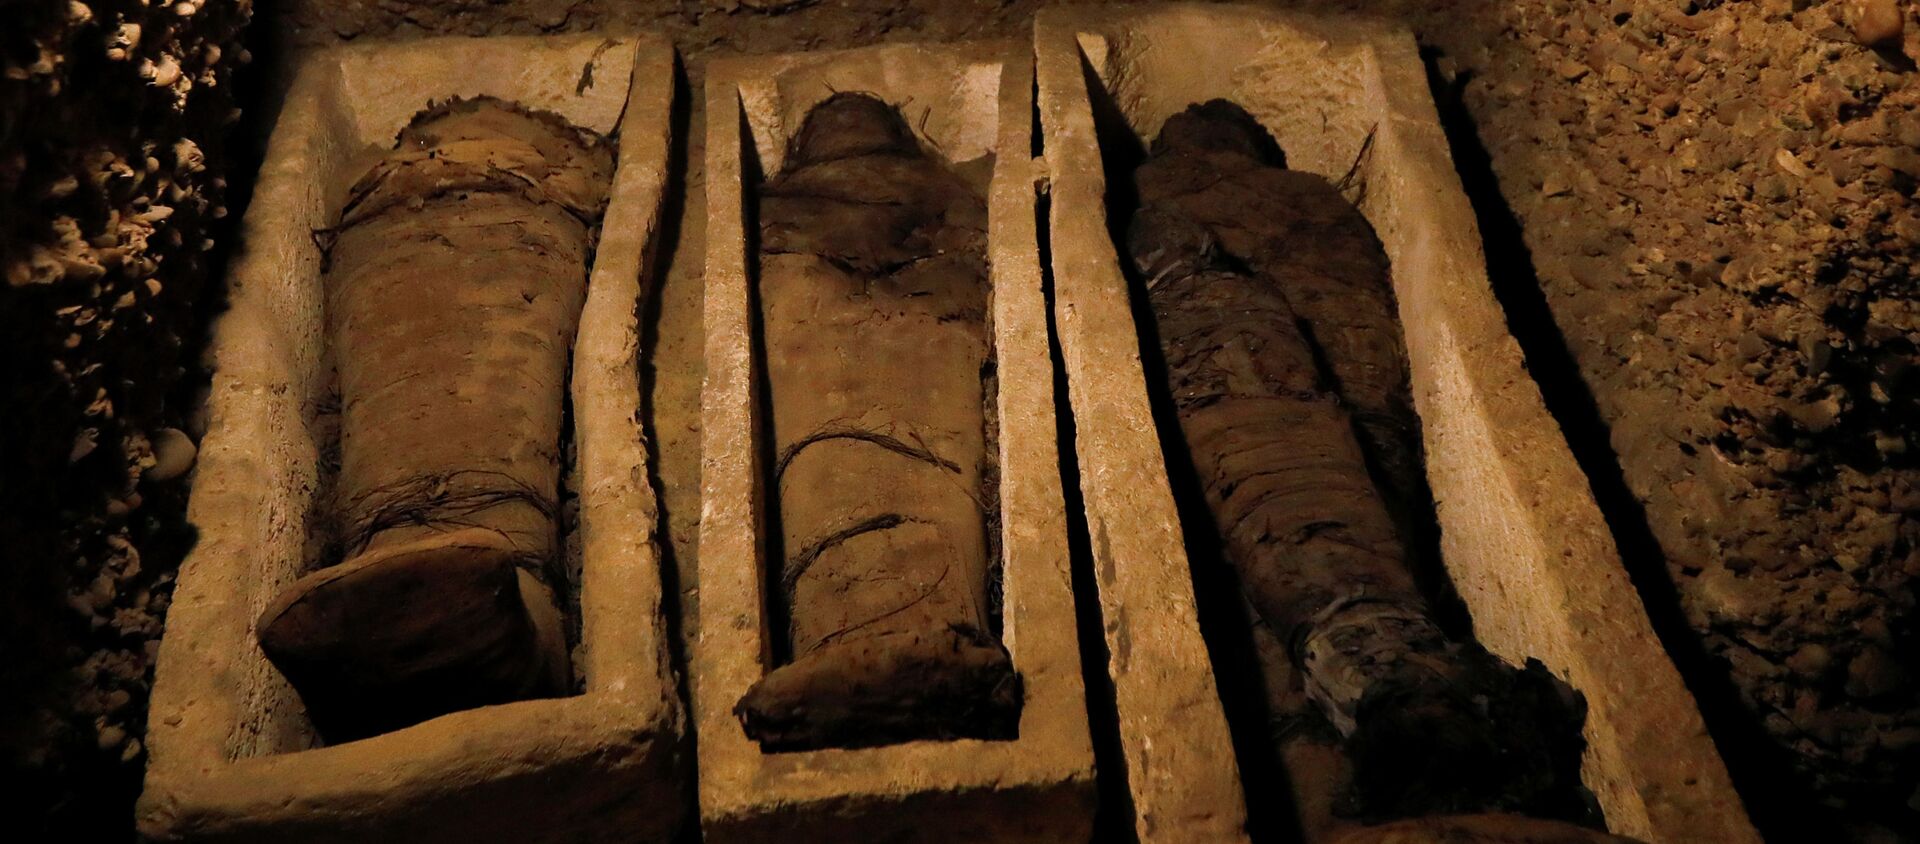 Обнаружение древней кладбищи в районе Туна эль-Габаль - Sputnik Кыргызстан, 1920, 04.02.2019